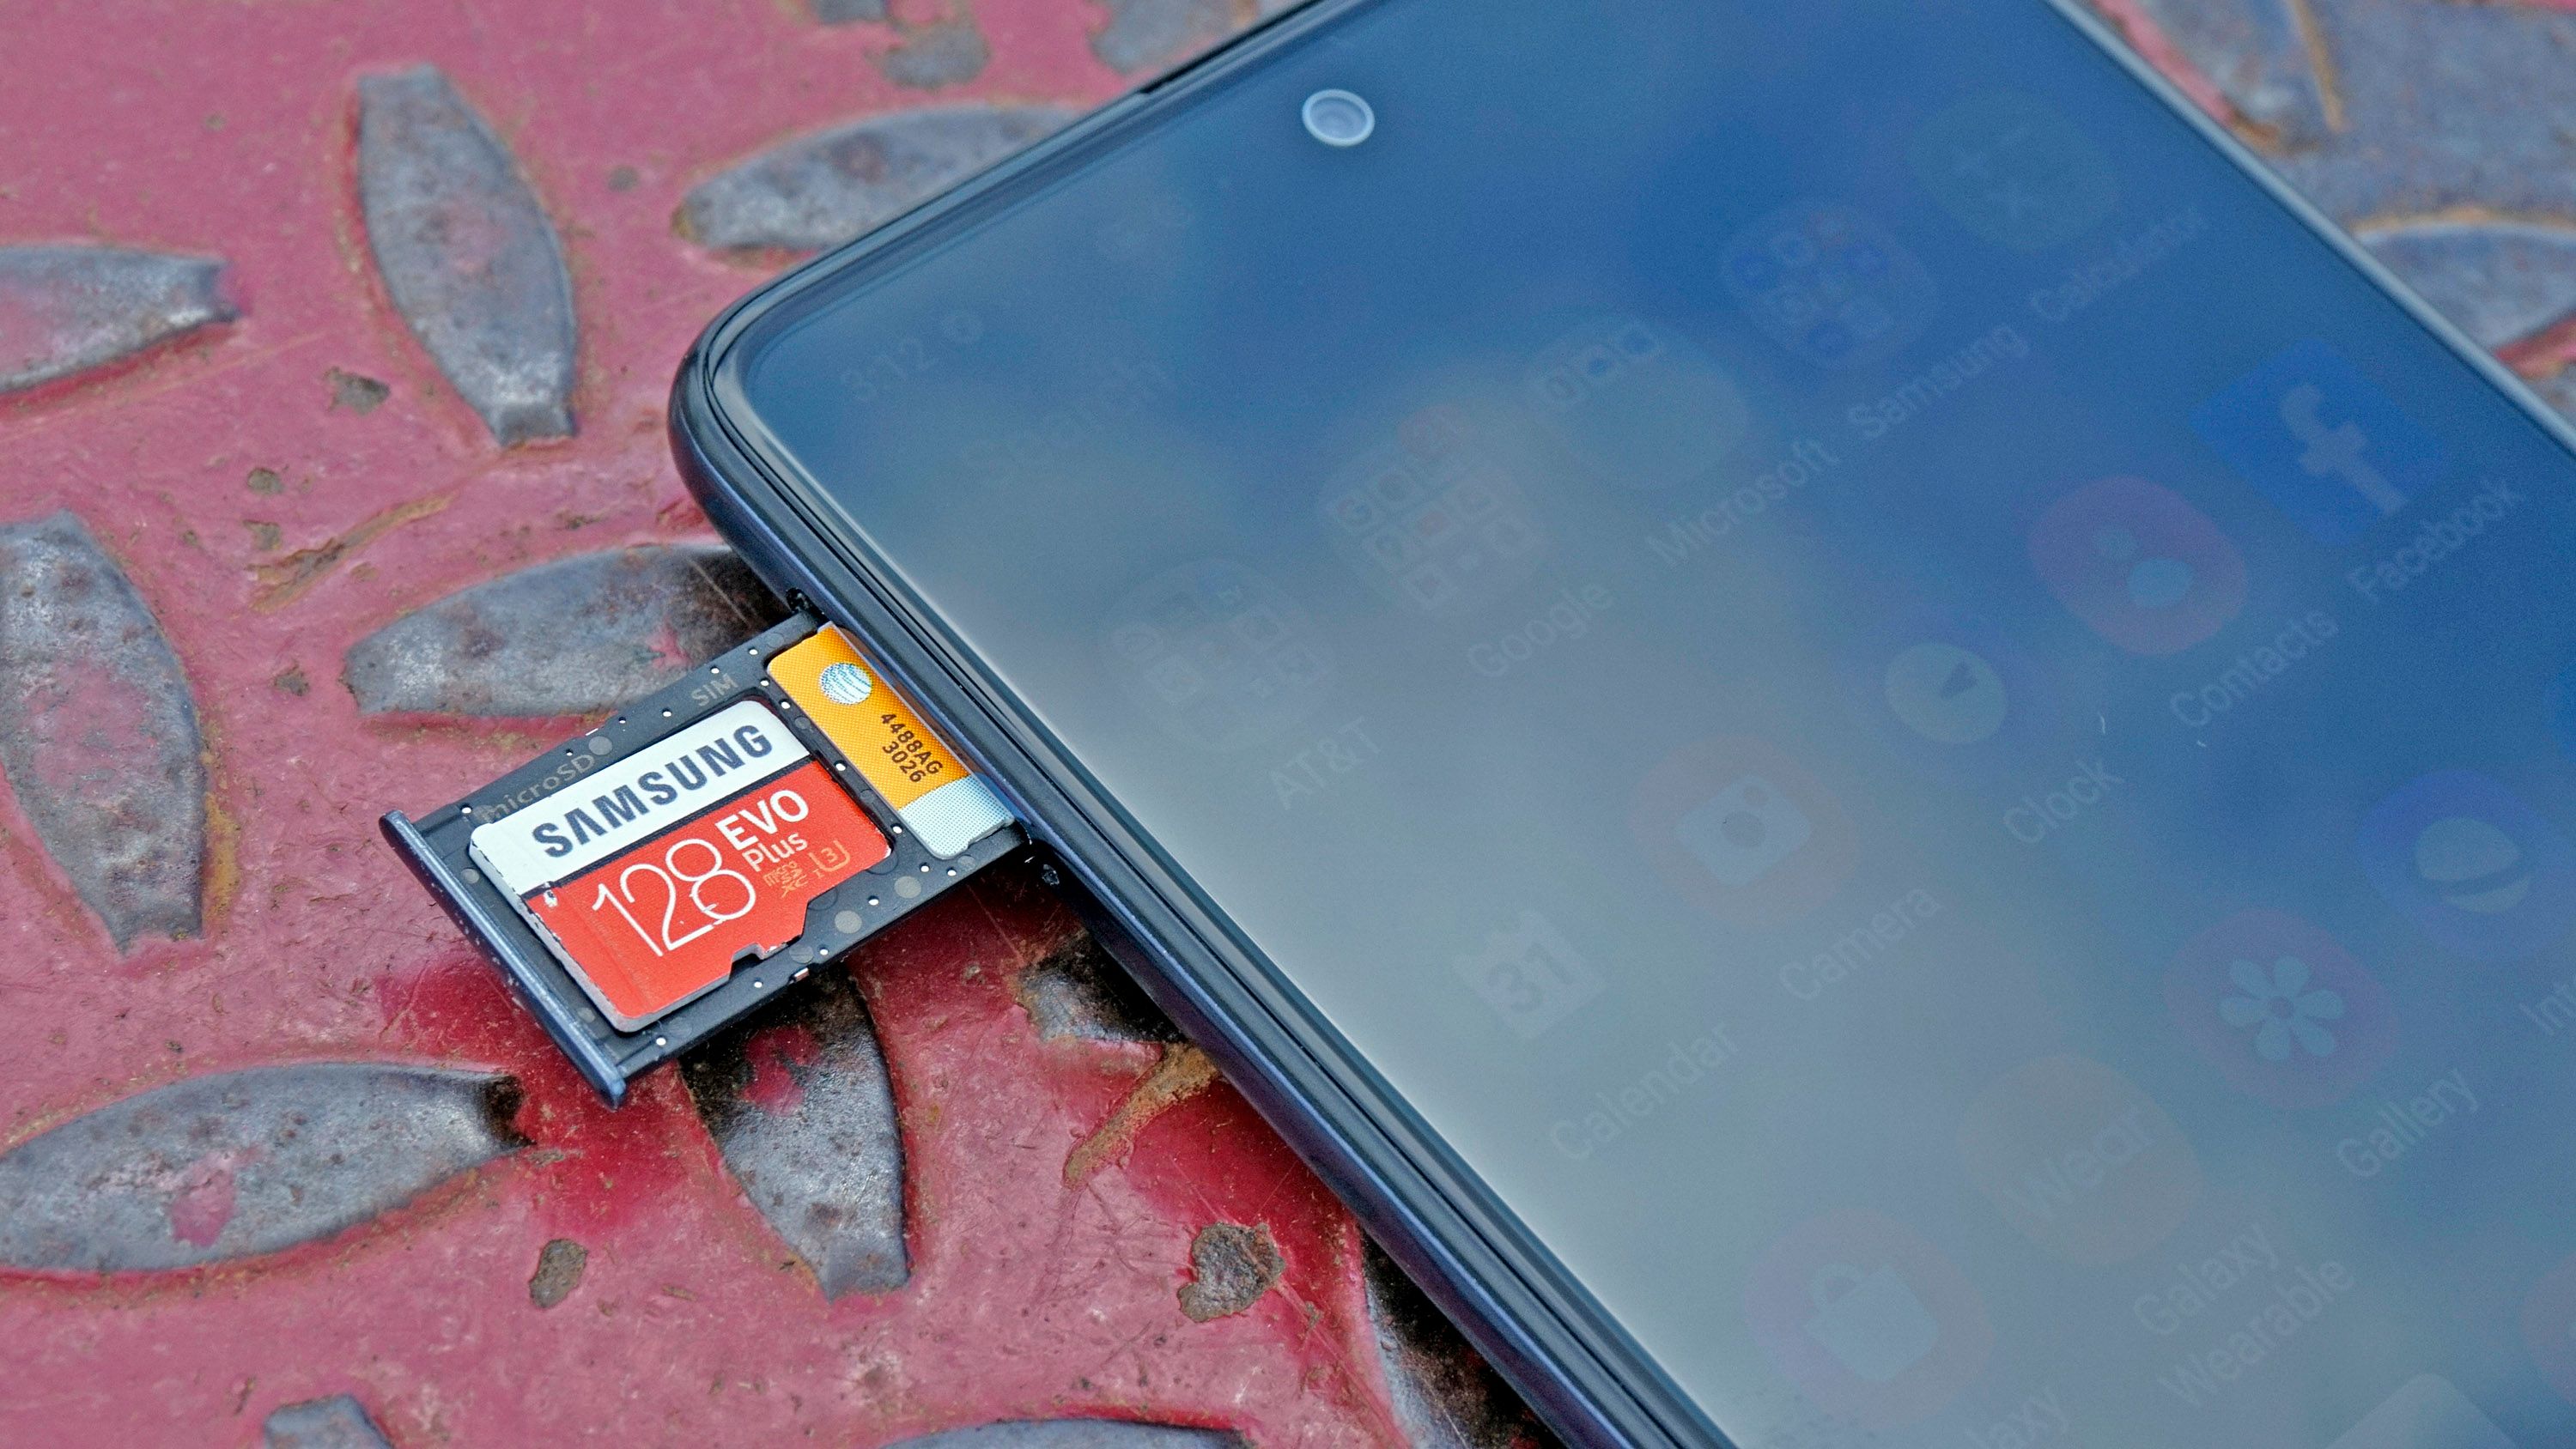 Galaxy A51 MicroSD card slot